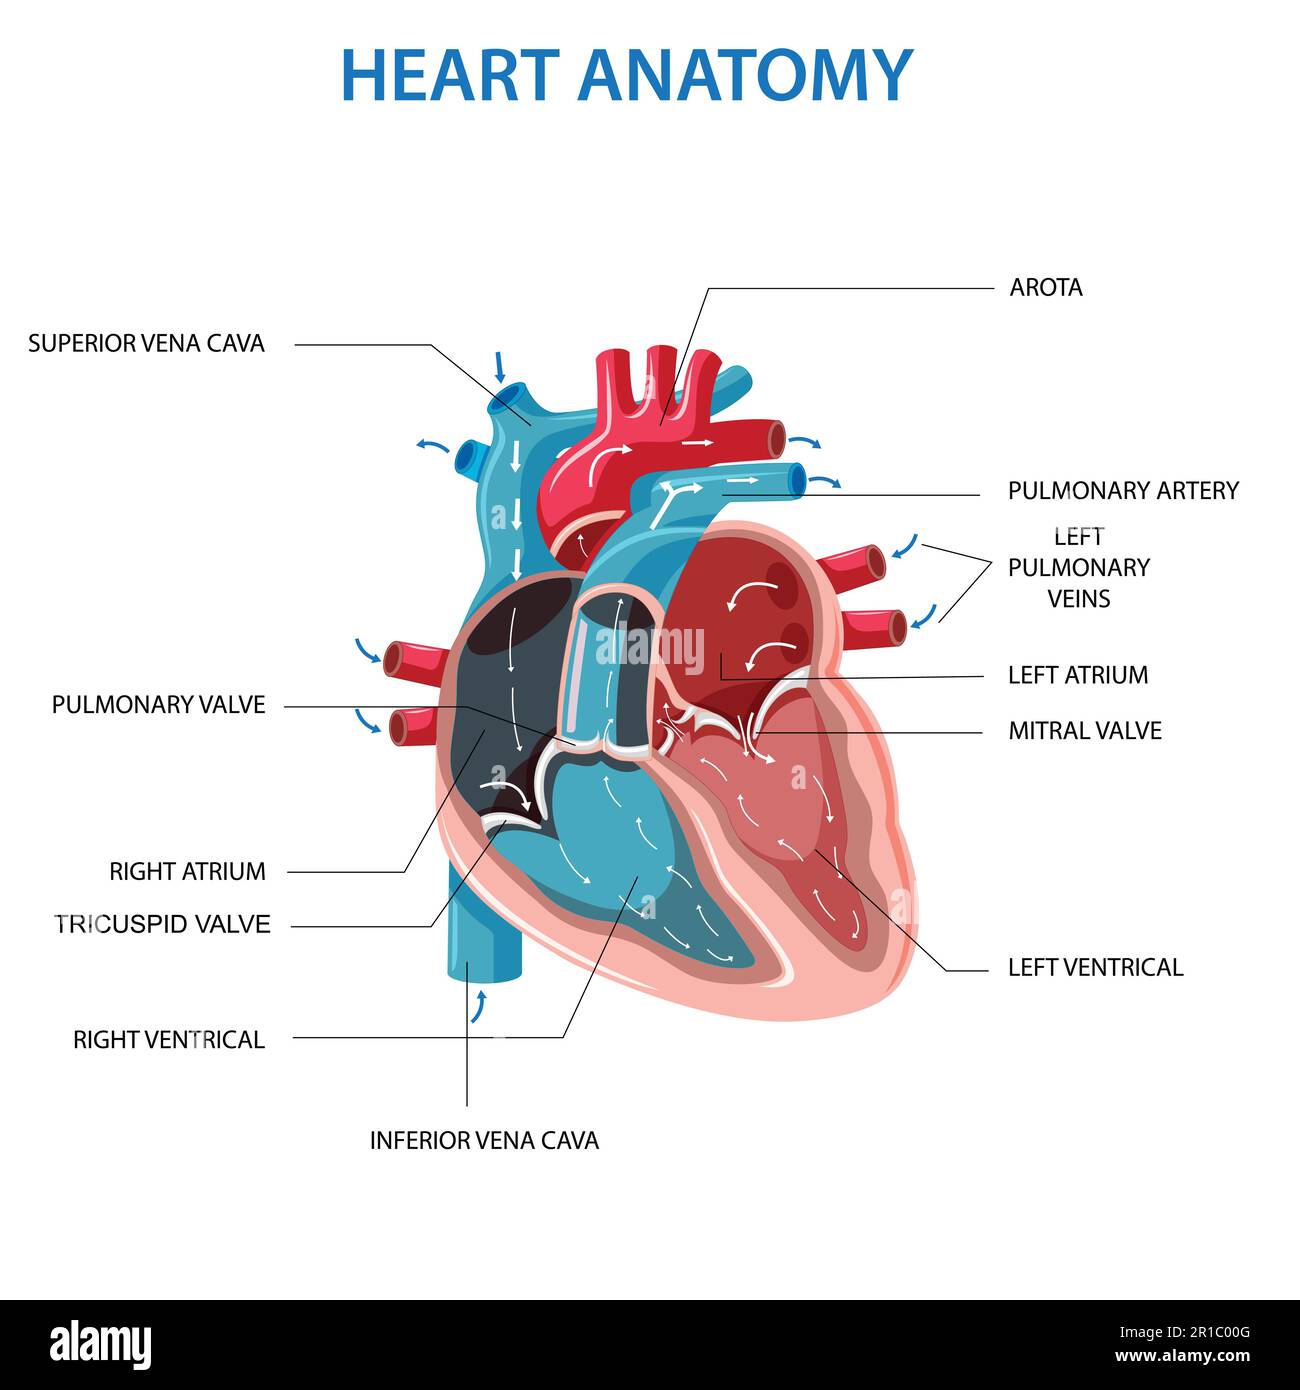 Anatomie du cœur humain. Diagramme en coupe du cœur avec les parties principales étiquetées. Illustration vectorielle du diagramme du cœur humain. Schéma pédagogique Illustration de Vecteur